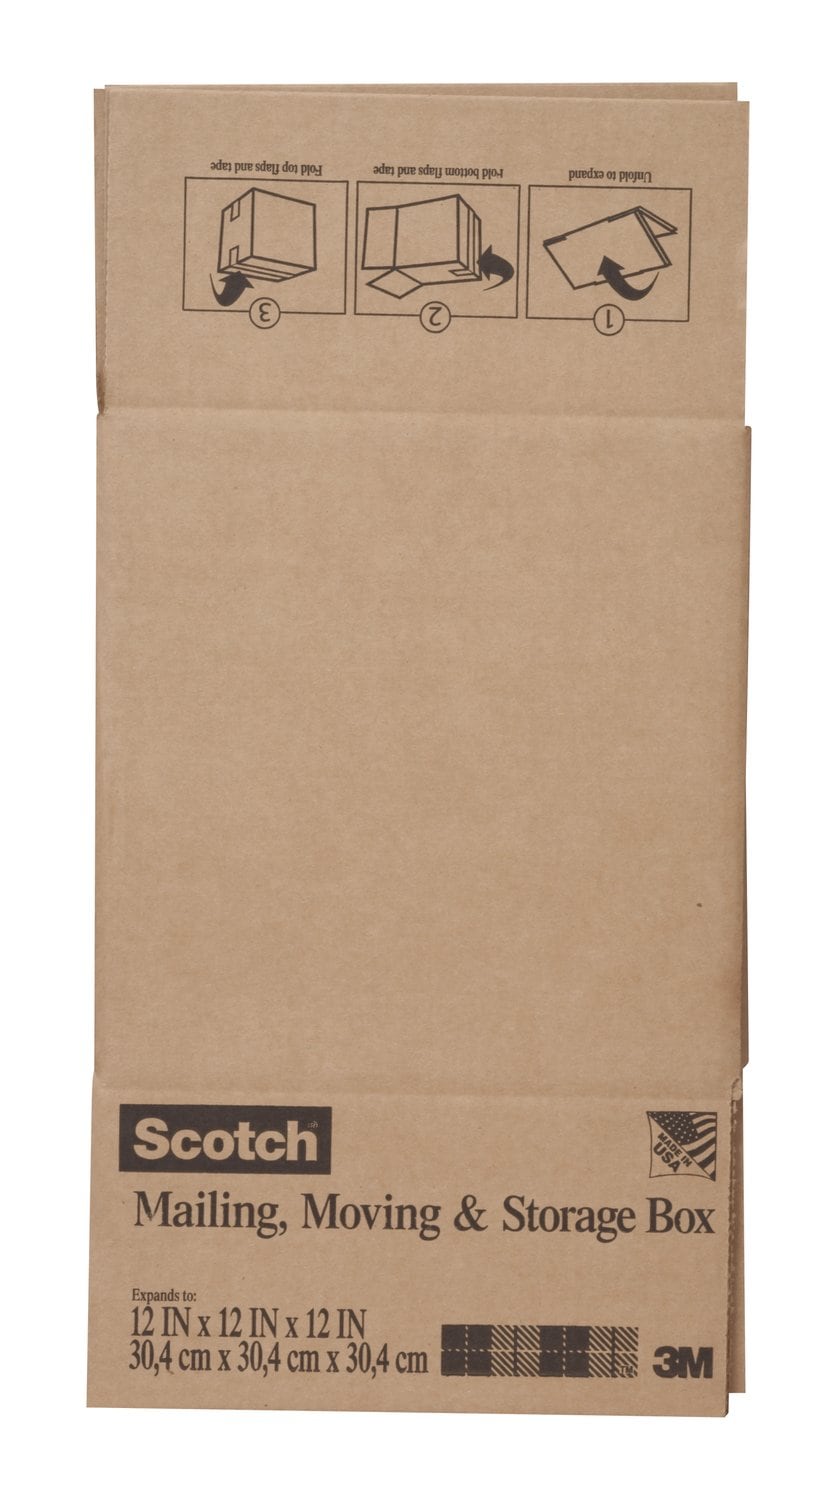 7010383818 - Scotch Folded Box, 8012FB 12 in x 12 in x 12 in